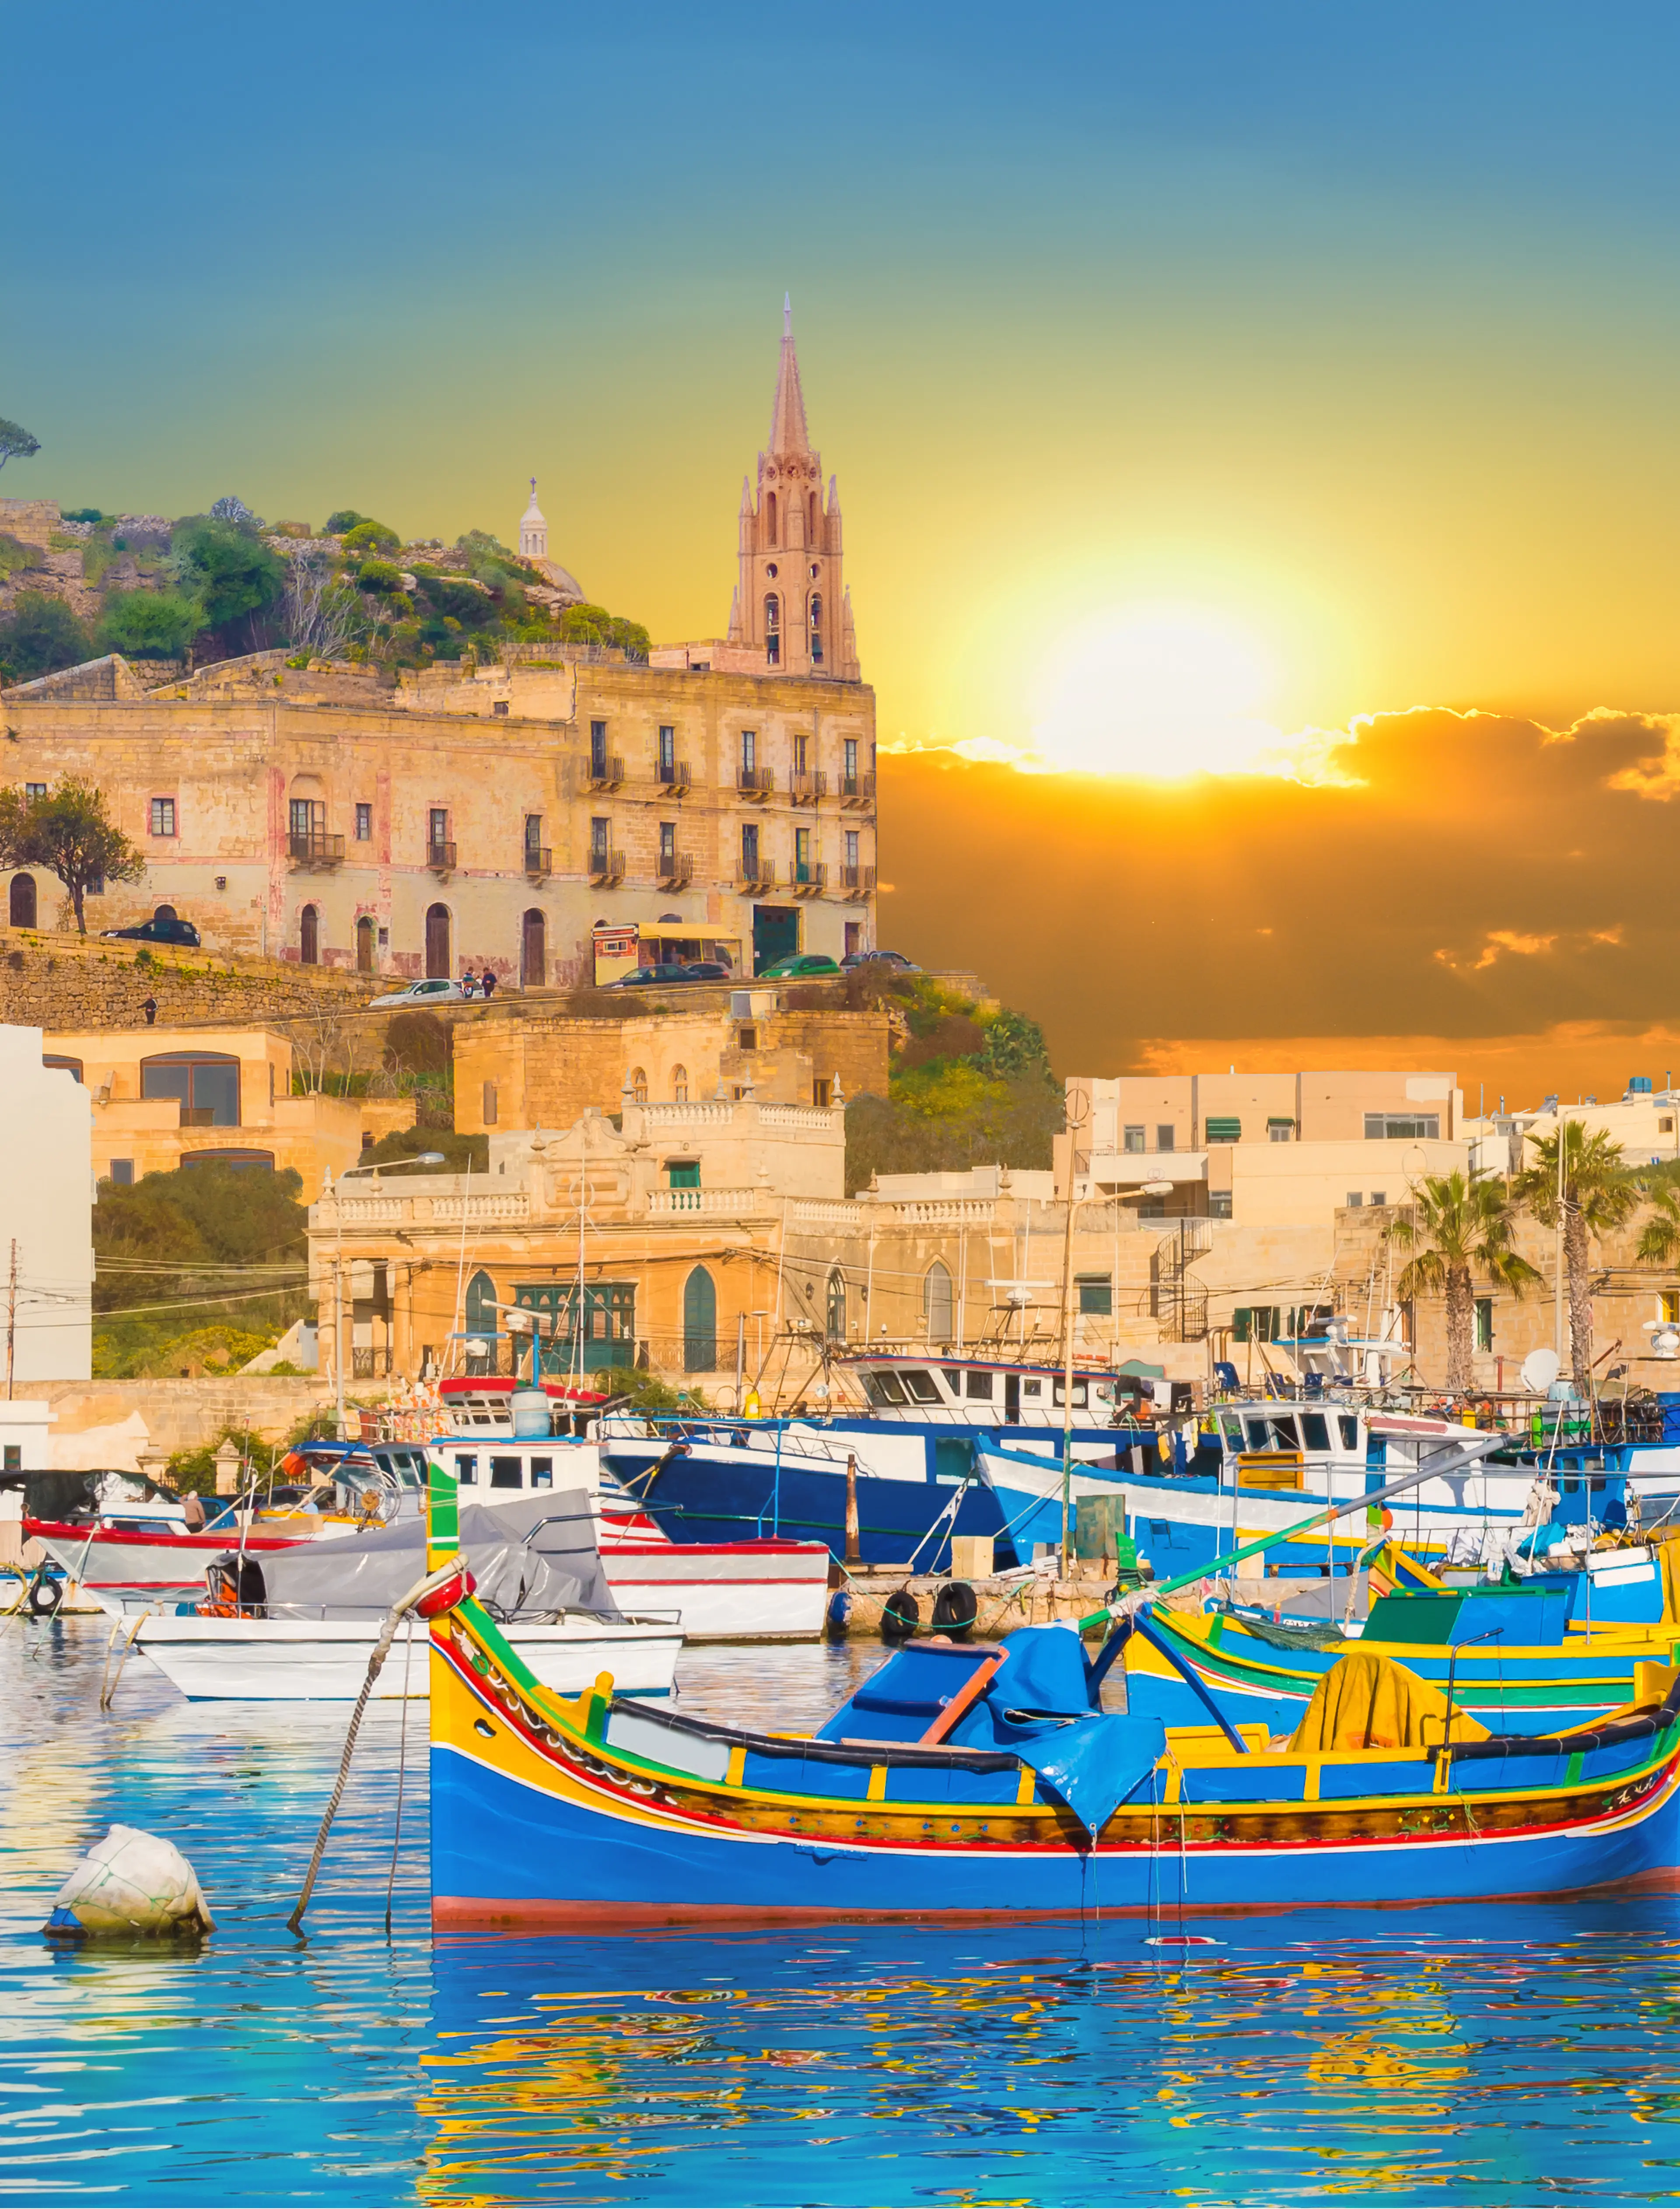 1-Day Family Adventure: Unexplored Valletta, Malta - Outdoors & Relaxation